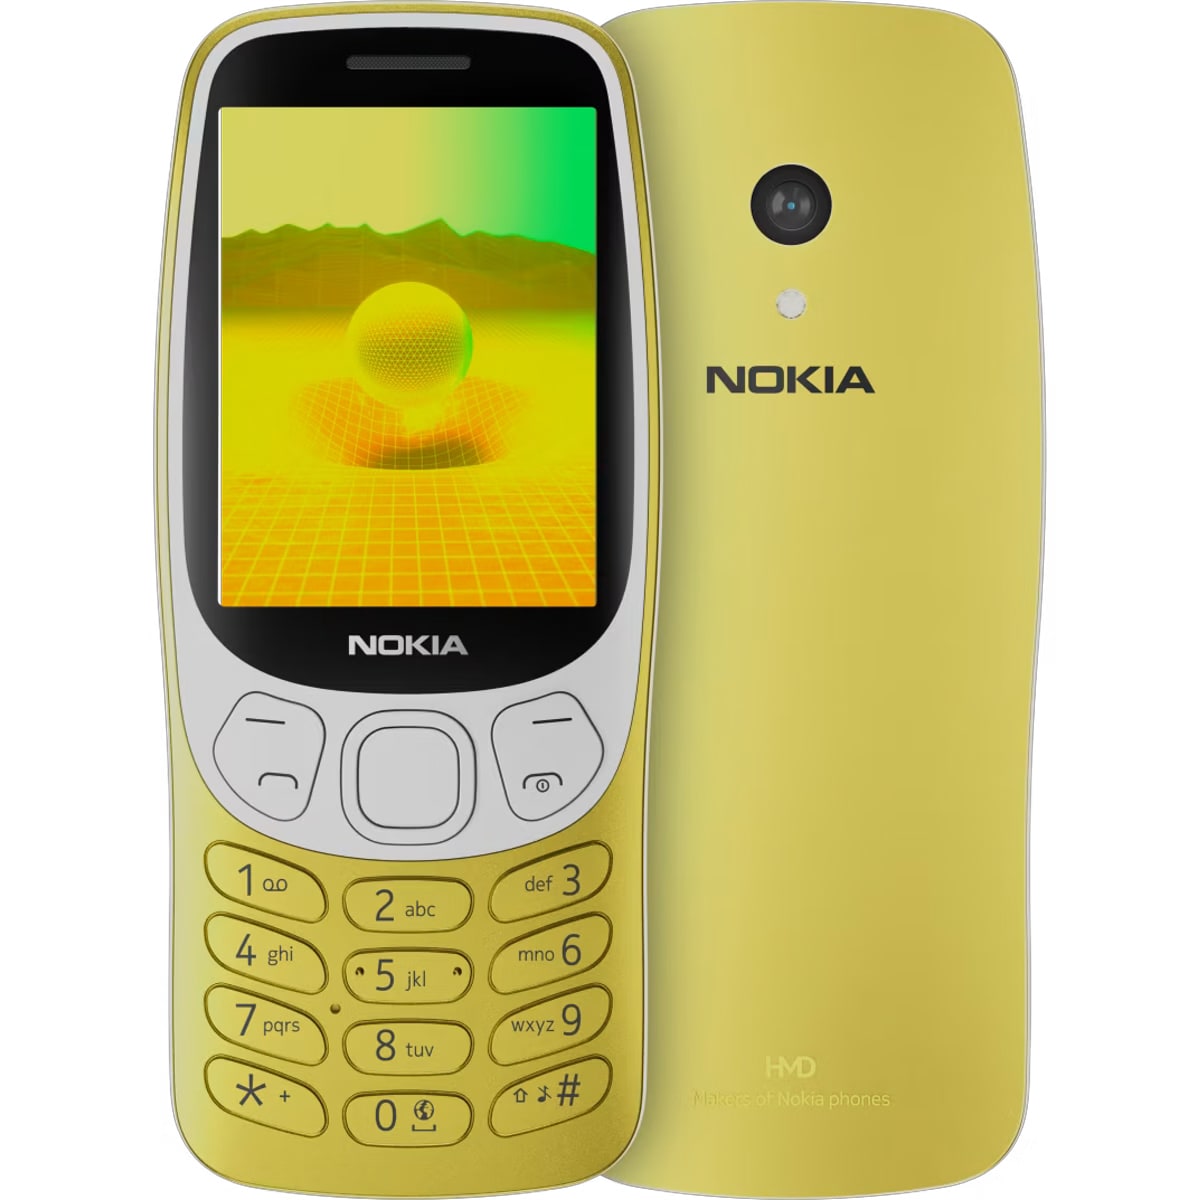 Nowa wersja telefonu Nokia 3210, wyceniona na 80 euro, stała się oficjalna